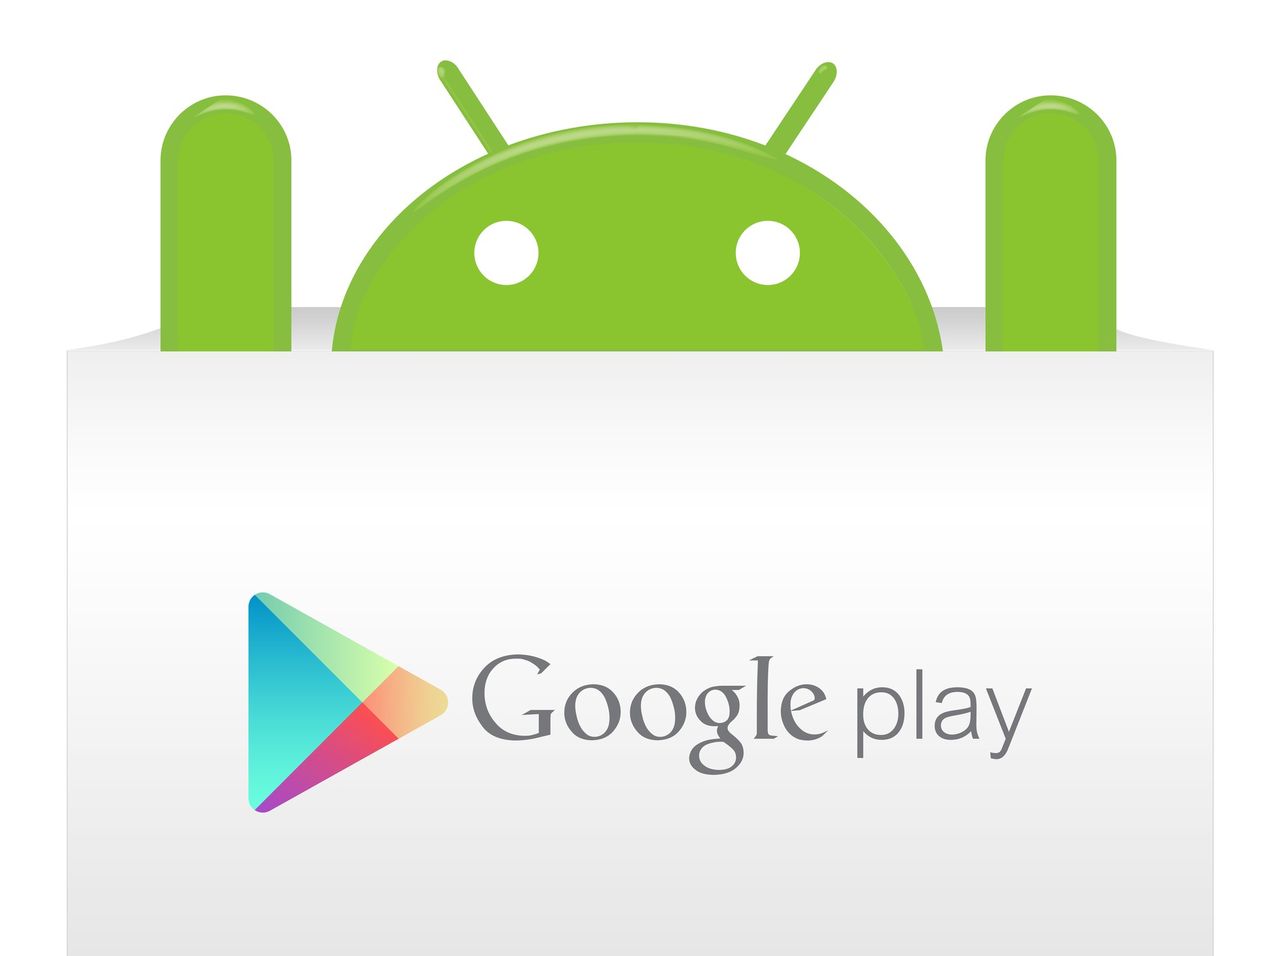 Google Play (fot. depositphotos.com)